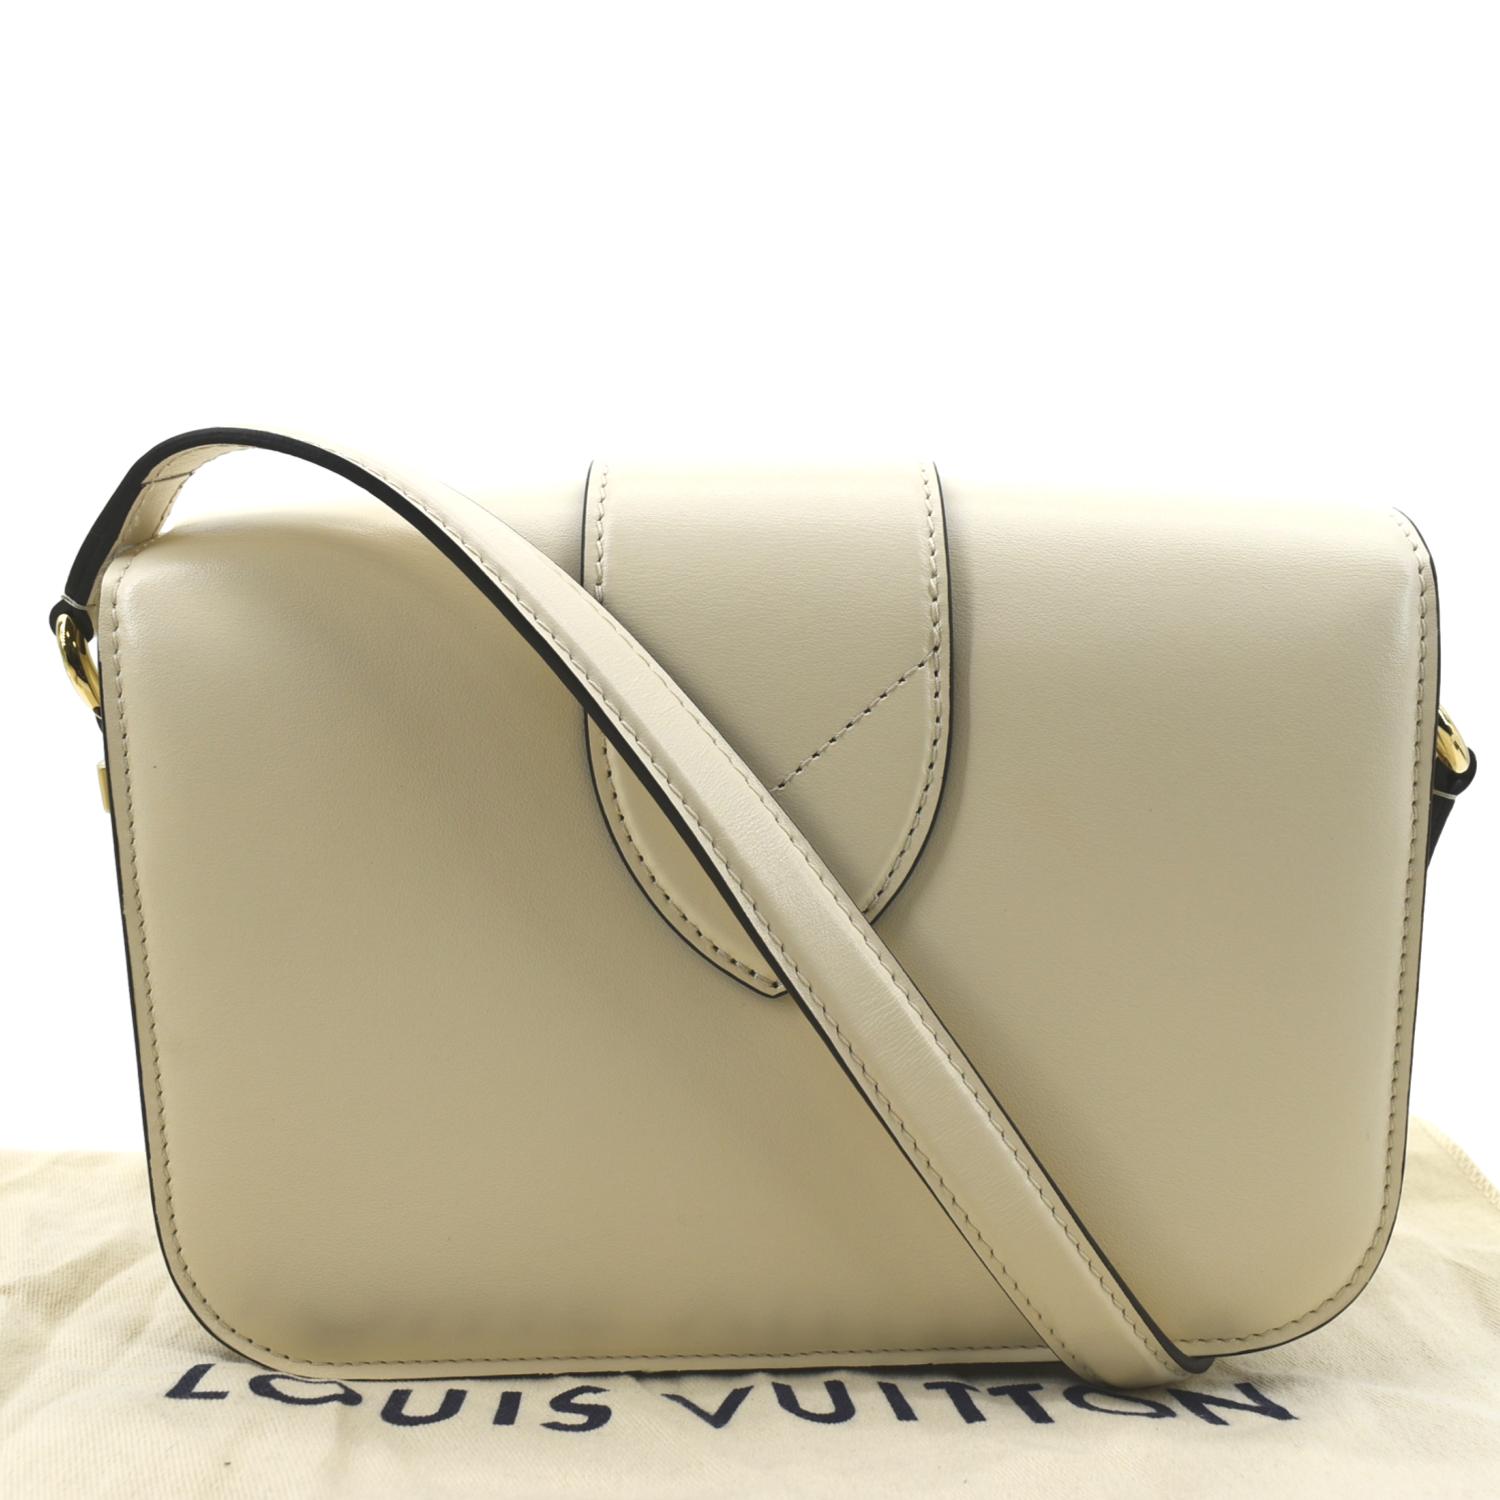 Louis Vuitton: LV Pont 9 shoulder bag combines versatility with style